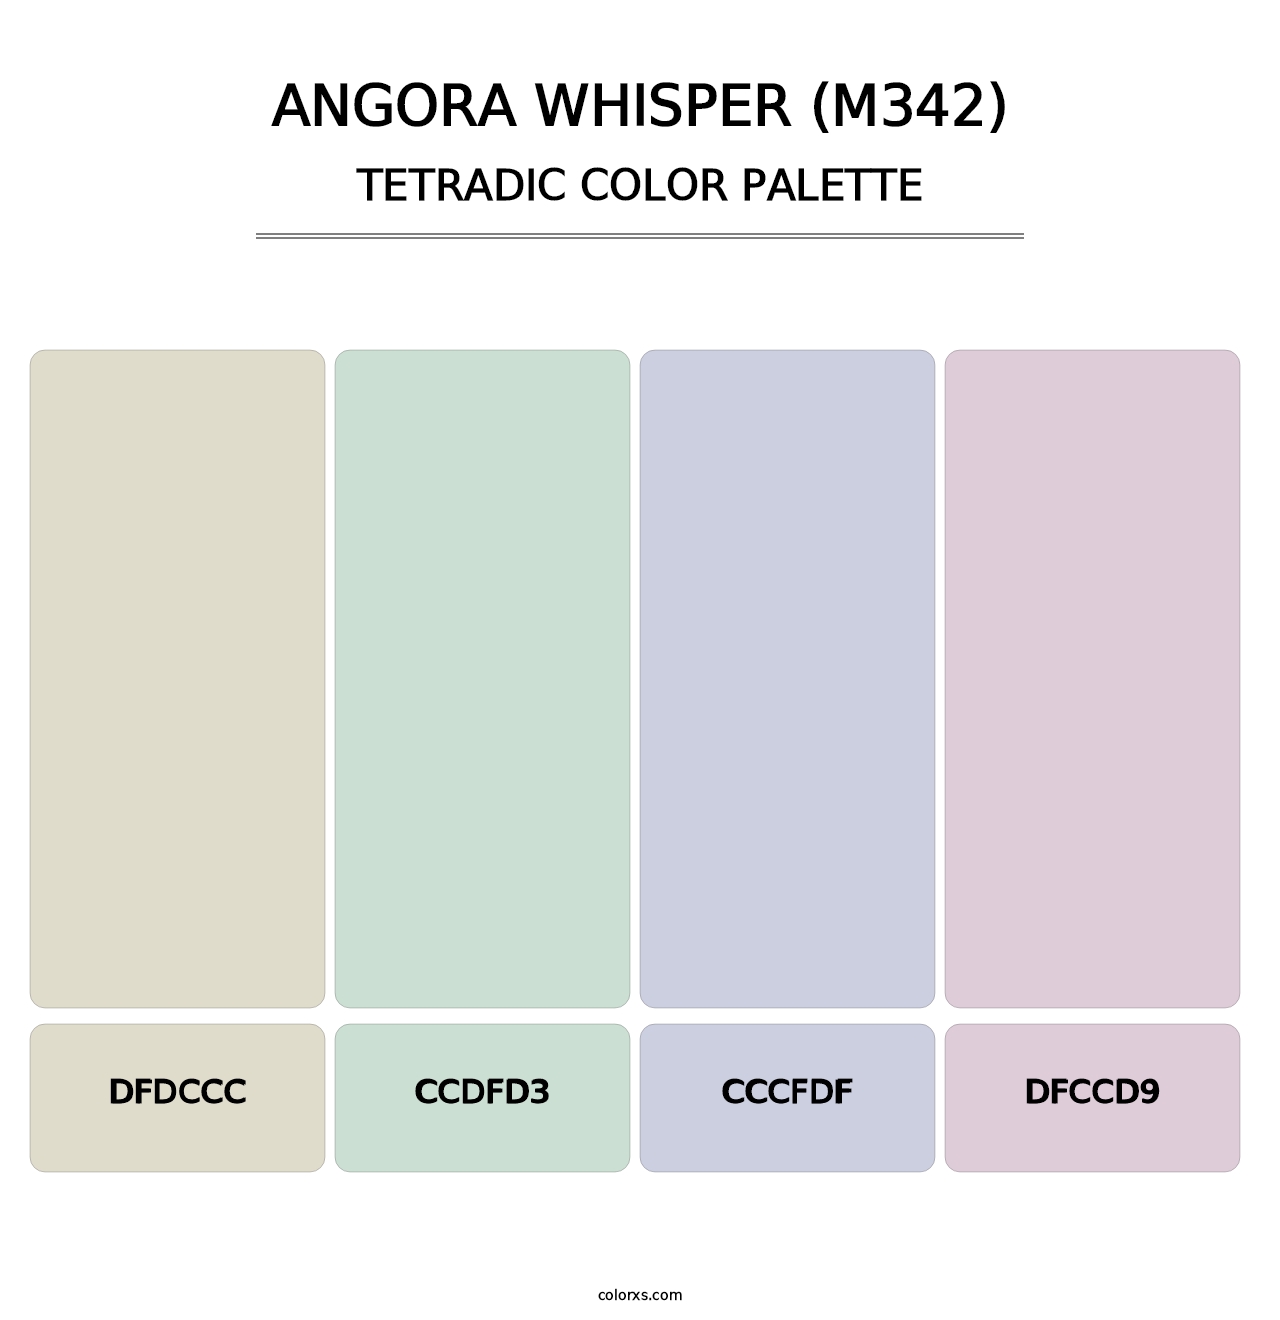 Angora Whisper (M342) - Tetradic Color Palette